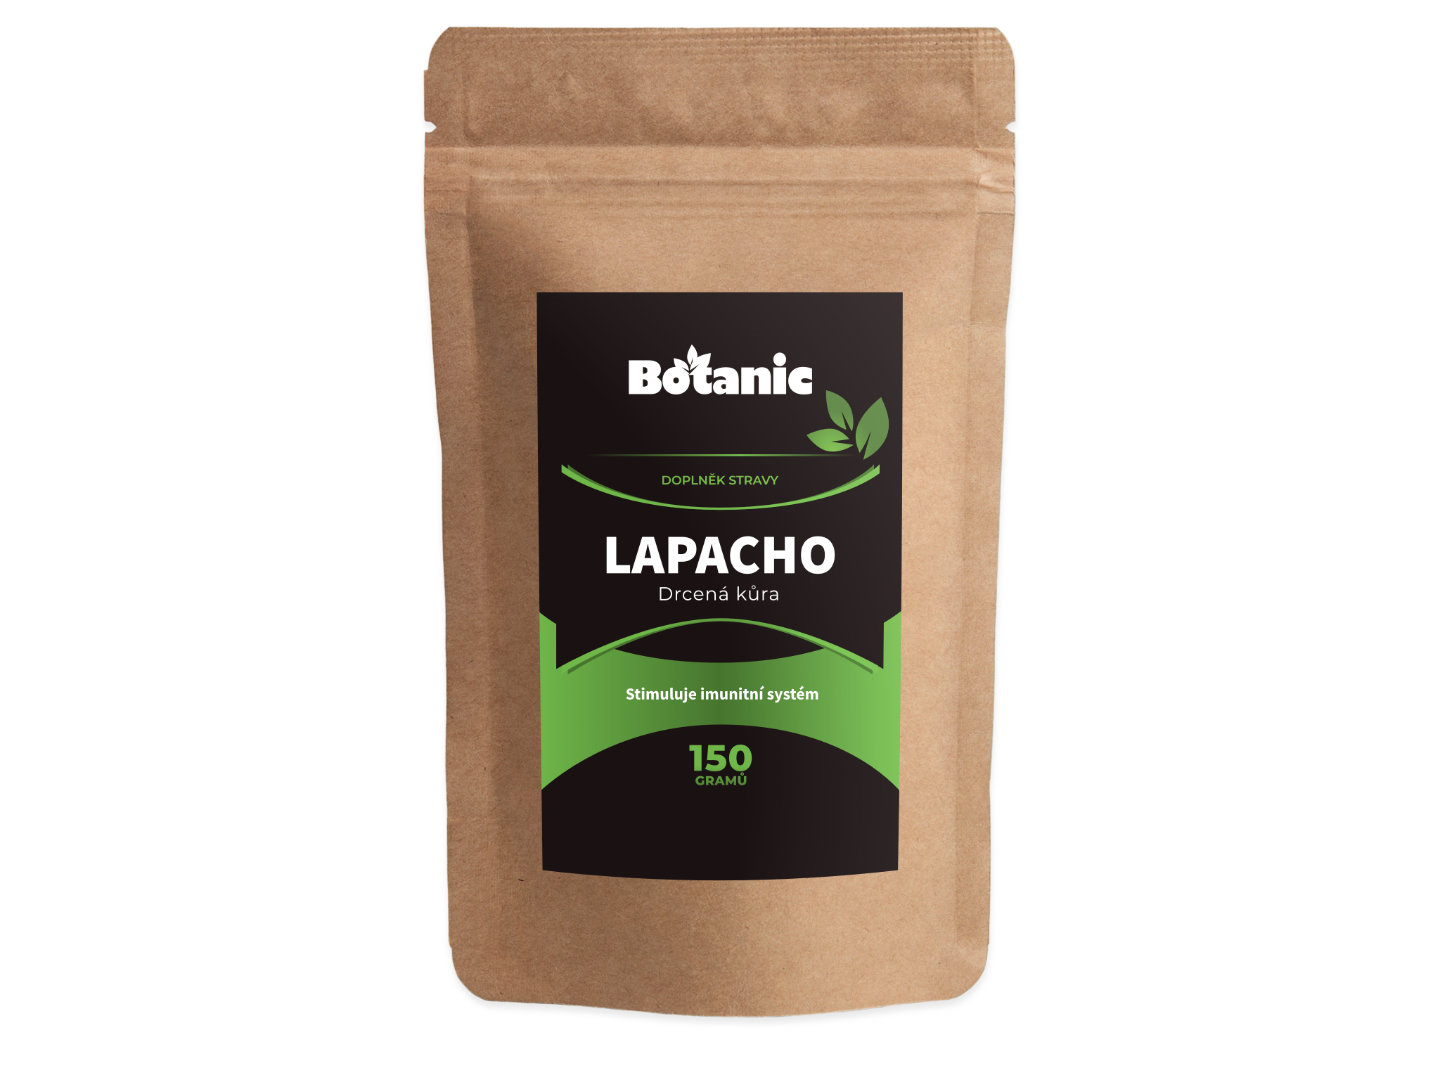 Botanic Lapacho 150g